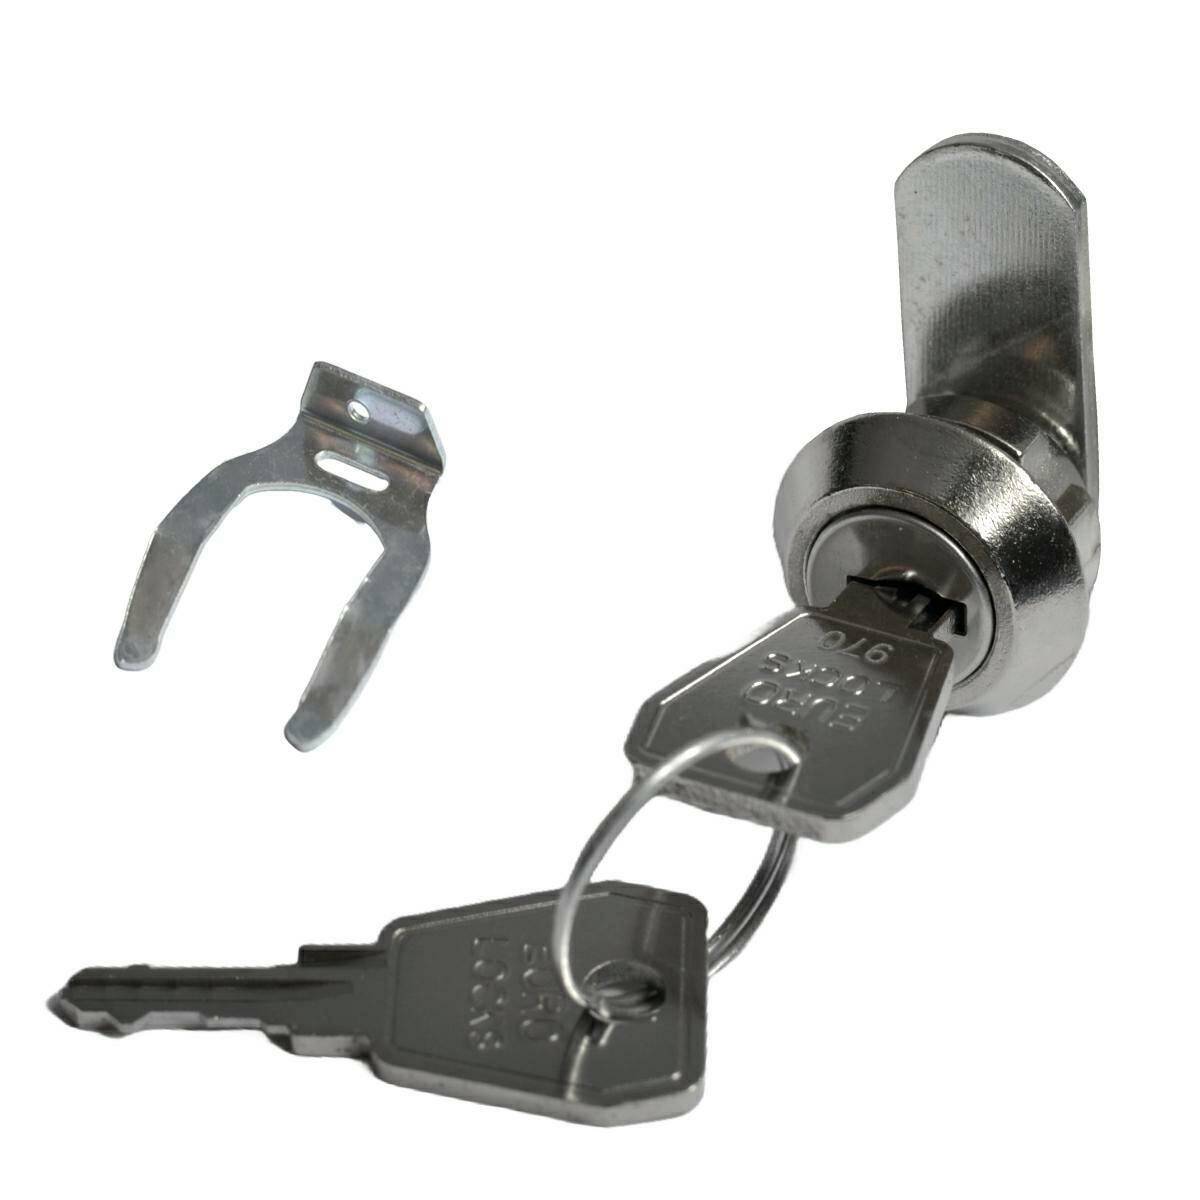 Euro-Locks 0221 Camlock